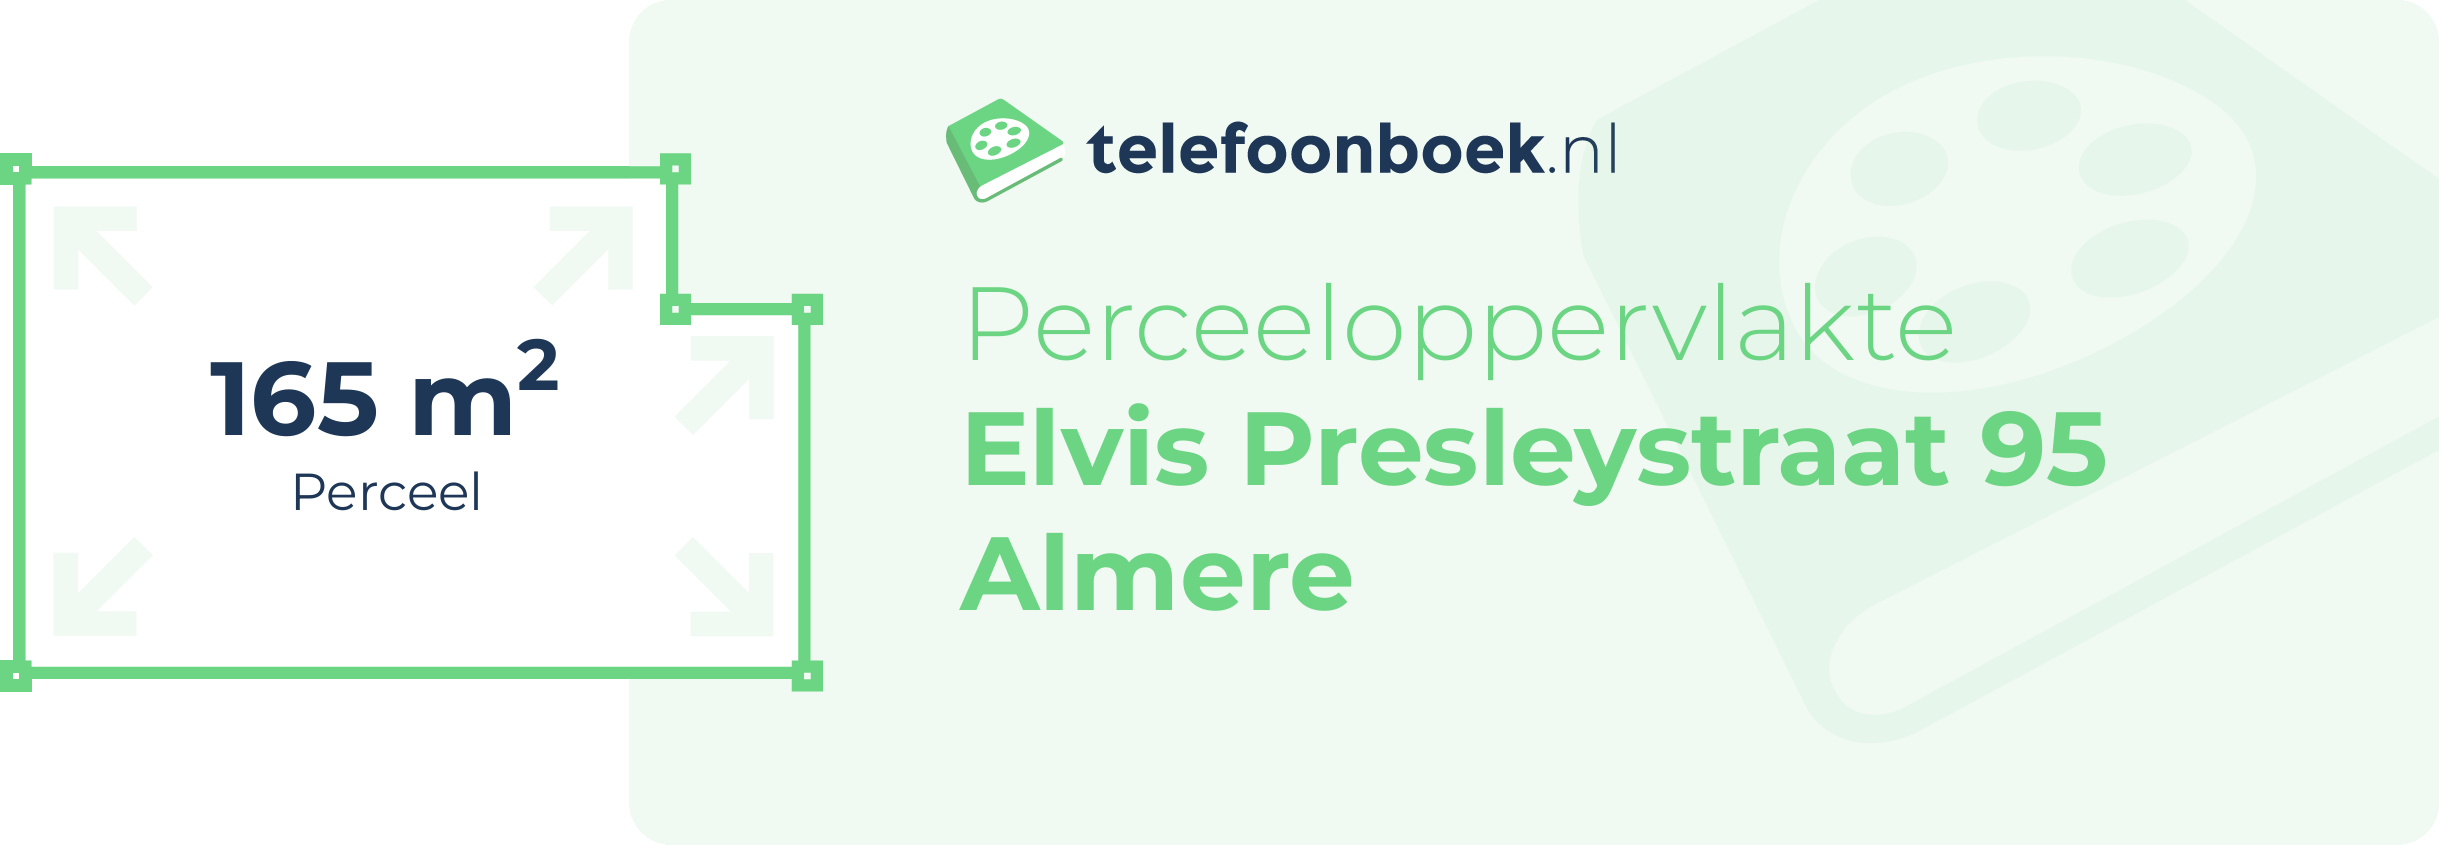 Perceeloppervlakte Elvis Presleystraat 95 Almere